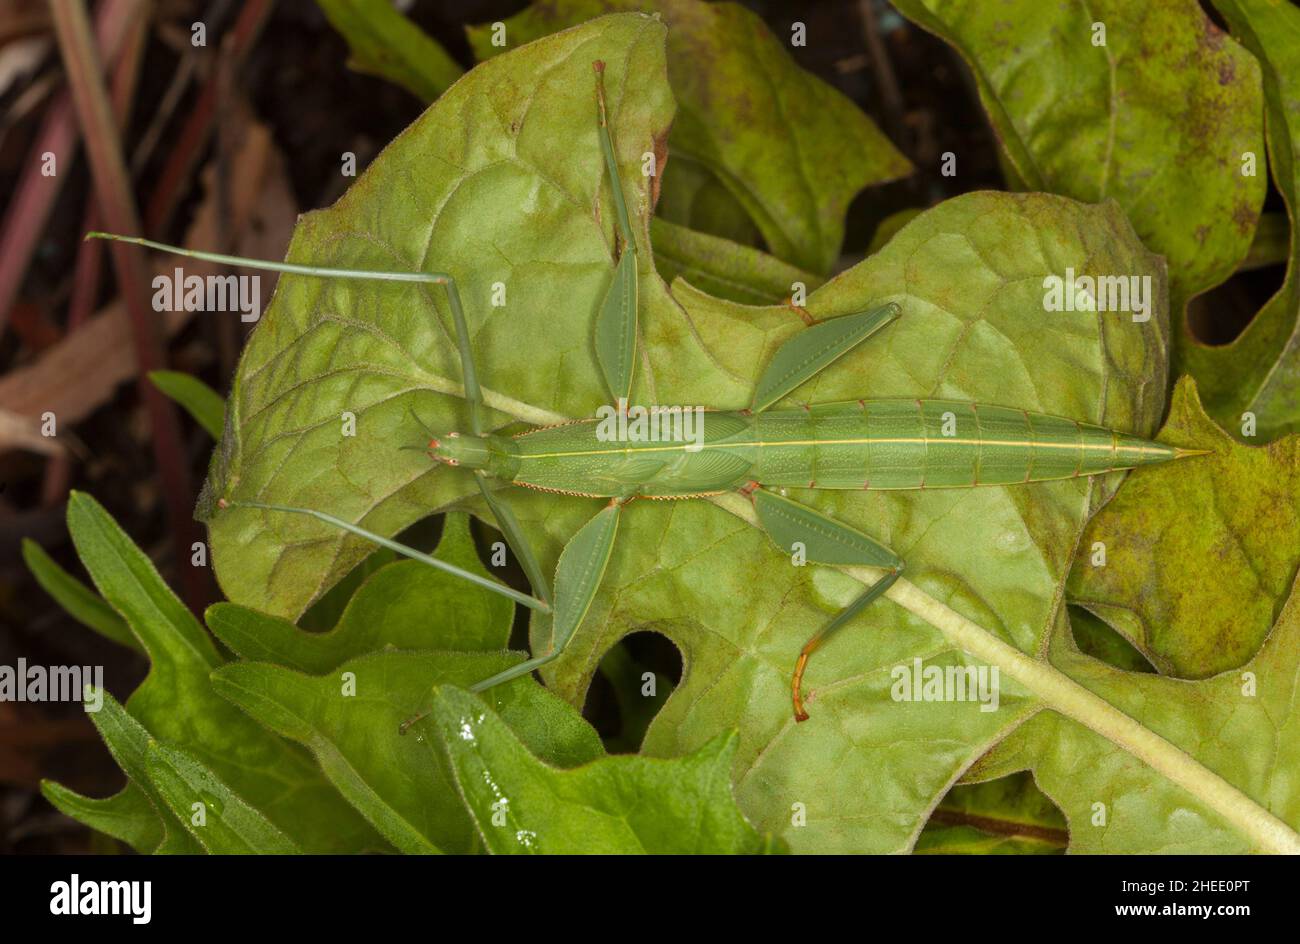 L'insetto del bastone dei bambini, Tropidogerus childrenii, una femmina grande del phasmid verde, bene-mimeted su una foglia verde in un giardino in Australia Foto Stock